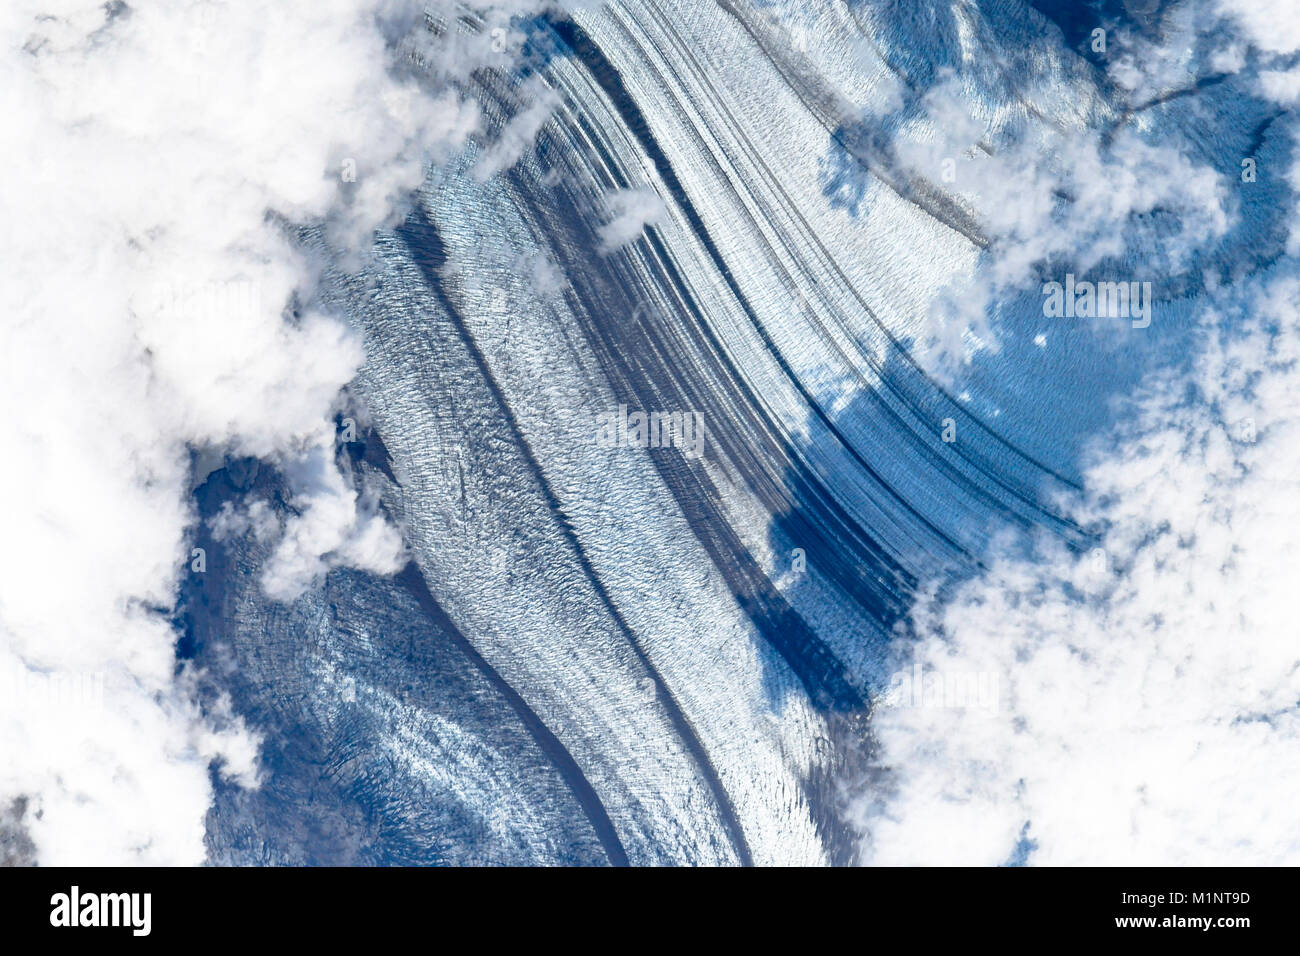 Beeindruckende Muster, Formen und Strukturen der Erde vom Weltraum aus gesehen. Dieses Bild Elemente von der NASA eingerichtet Stockfoto